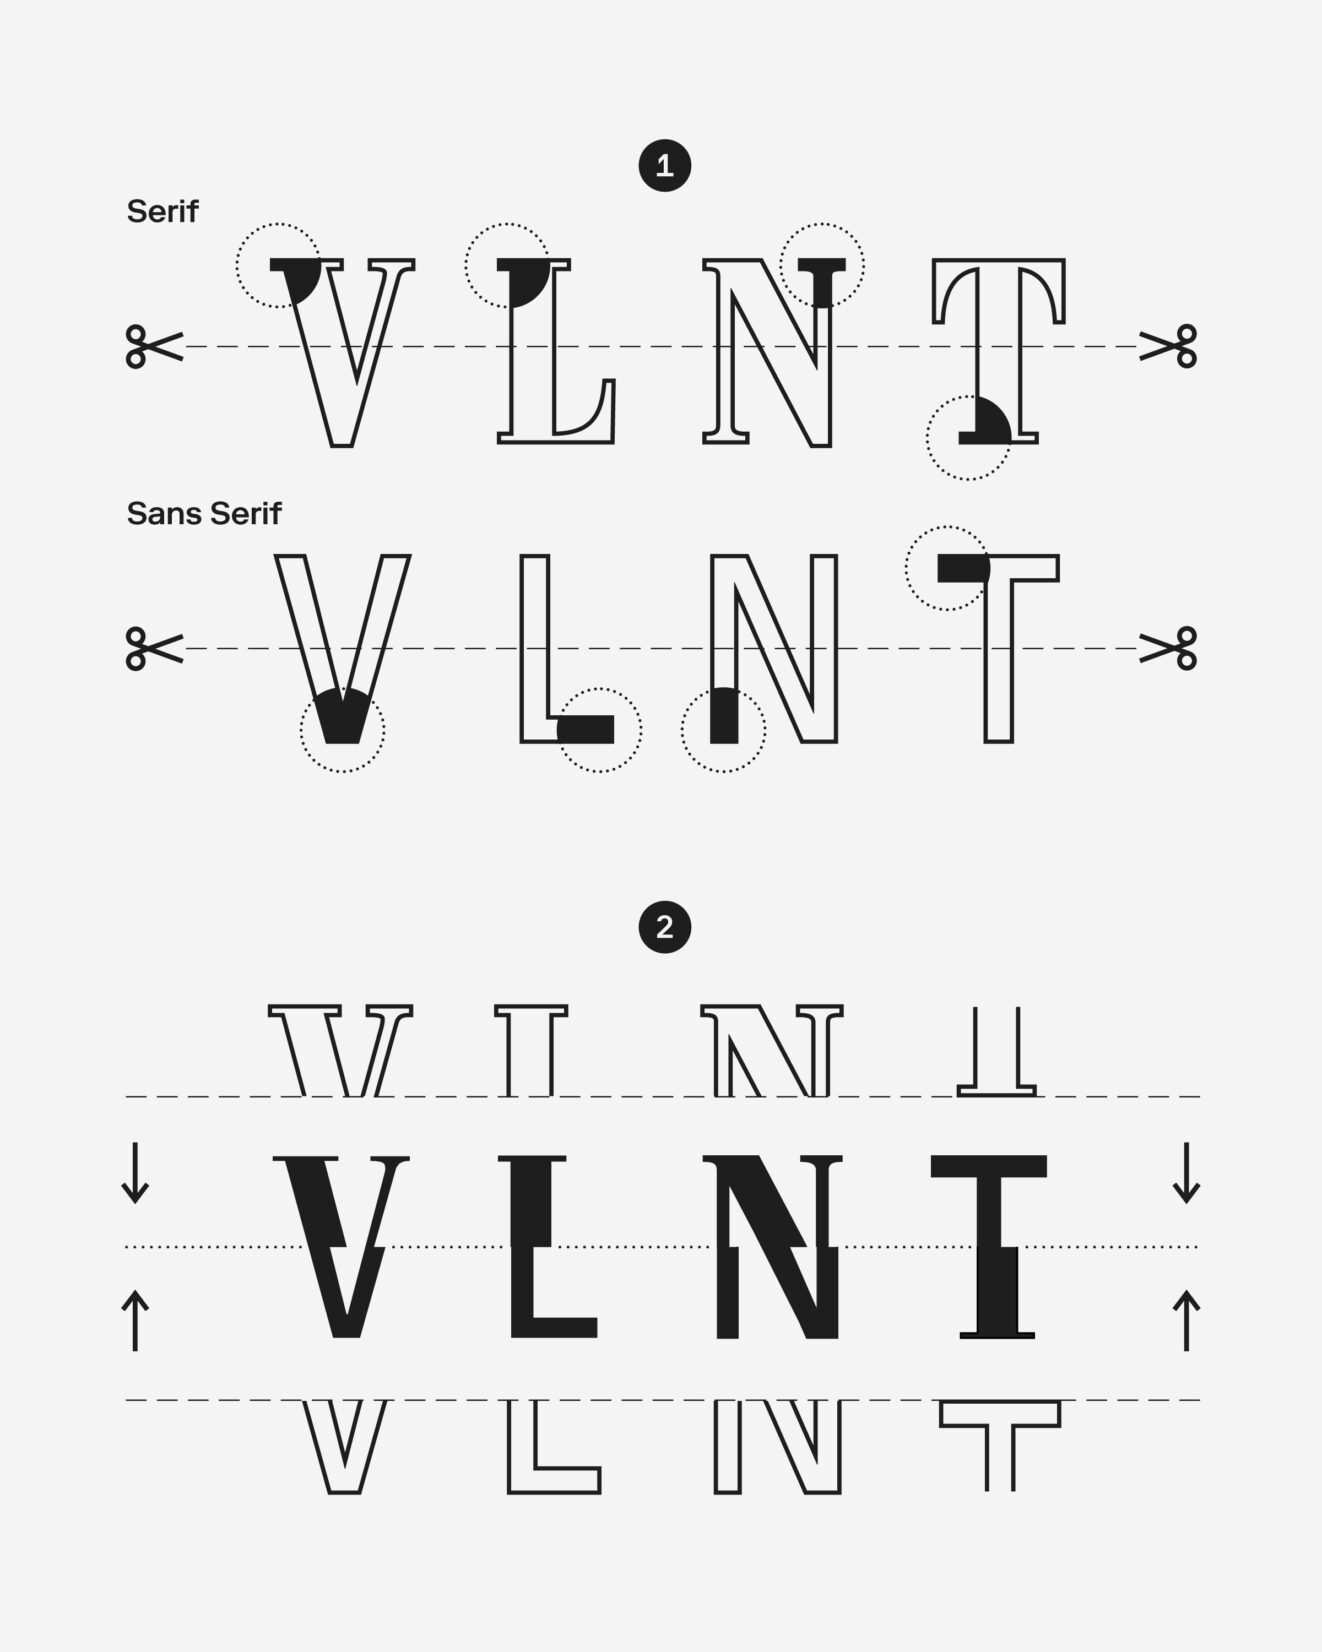 Die eigens für das Ristorante Valentino gestaltete Schrift, wurde aus den zwei Schrifttypen Serif und Sans Serif zusammengesetzt.